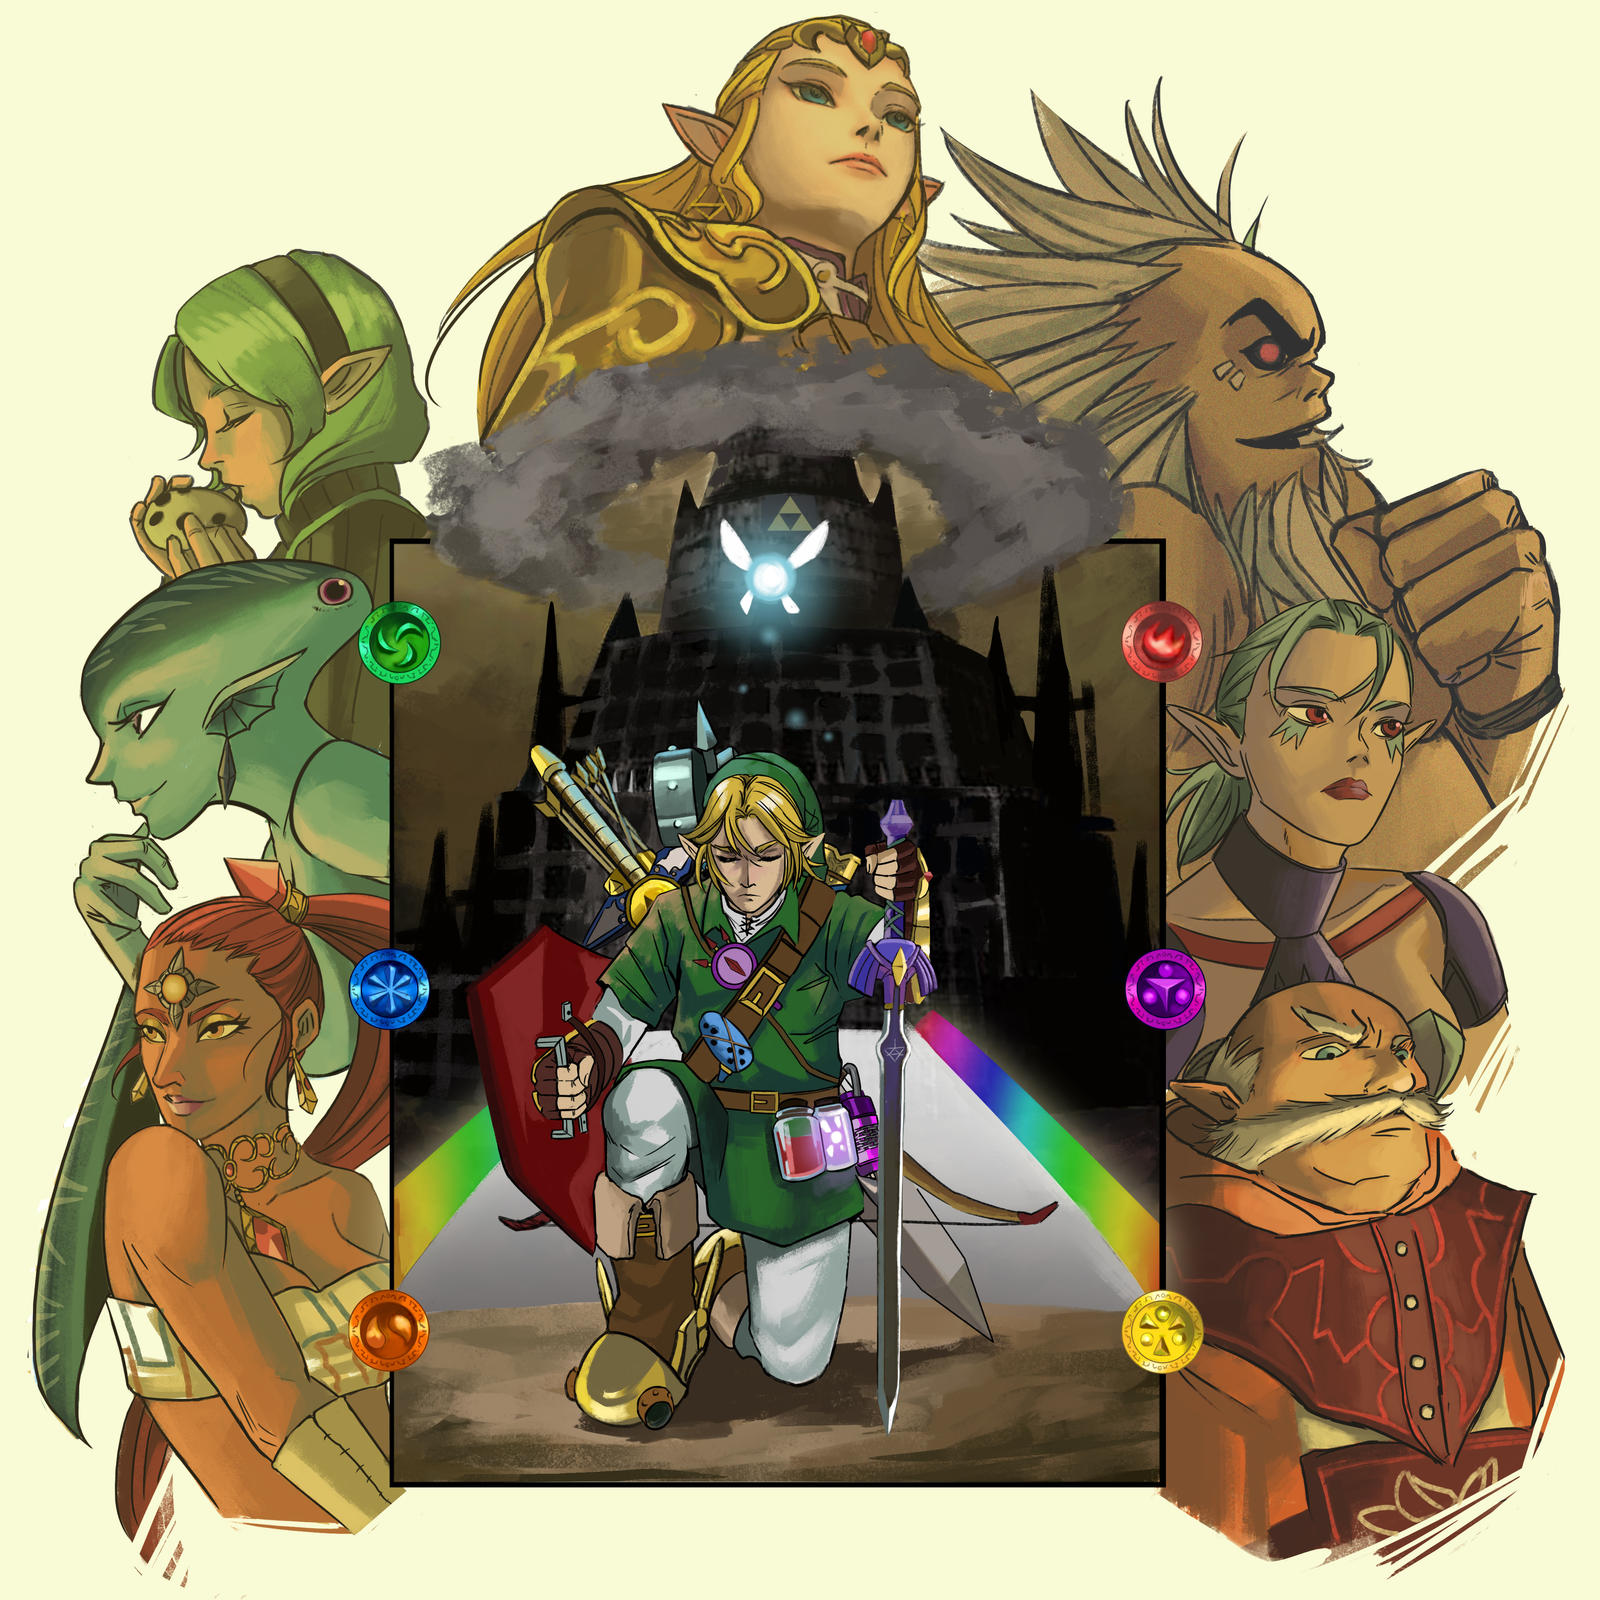 Ocarina of Time: Zelda Costume by junk-hoes on DeviantArt